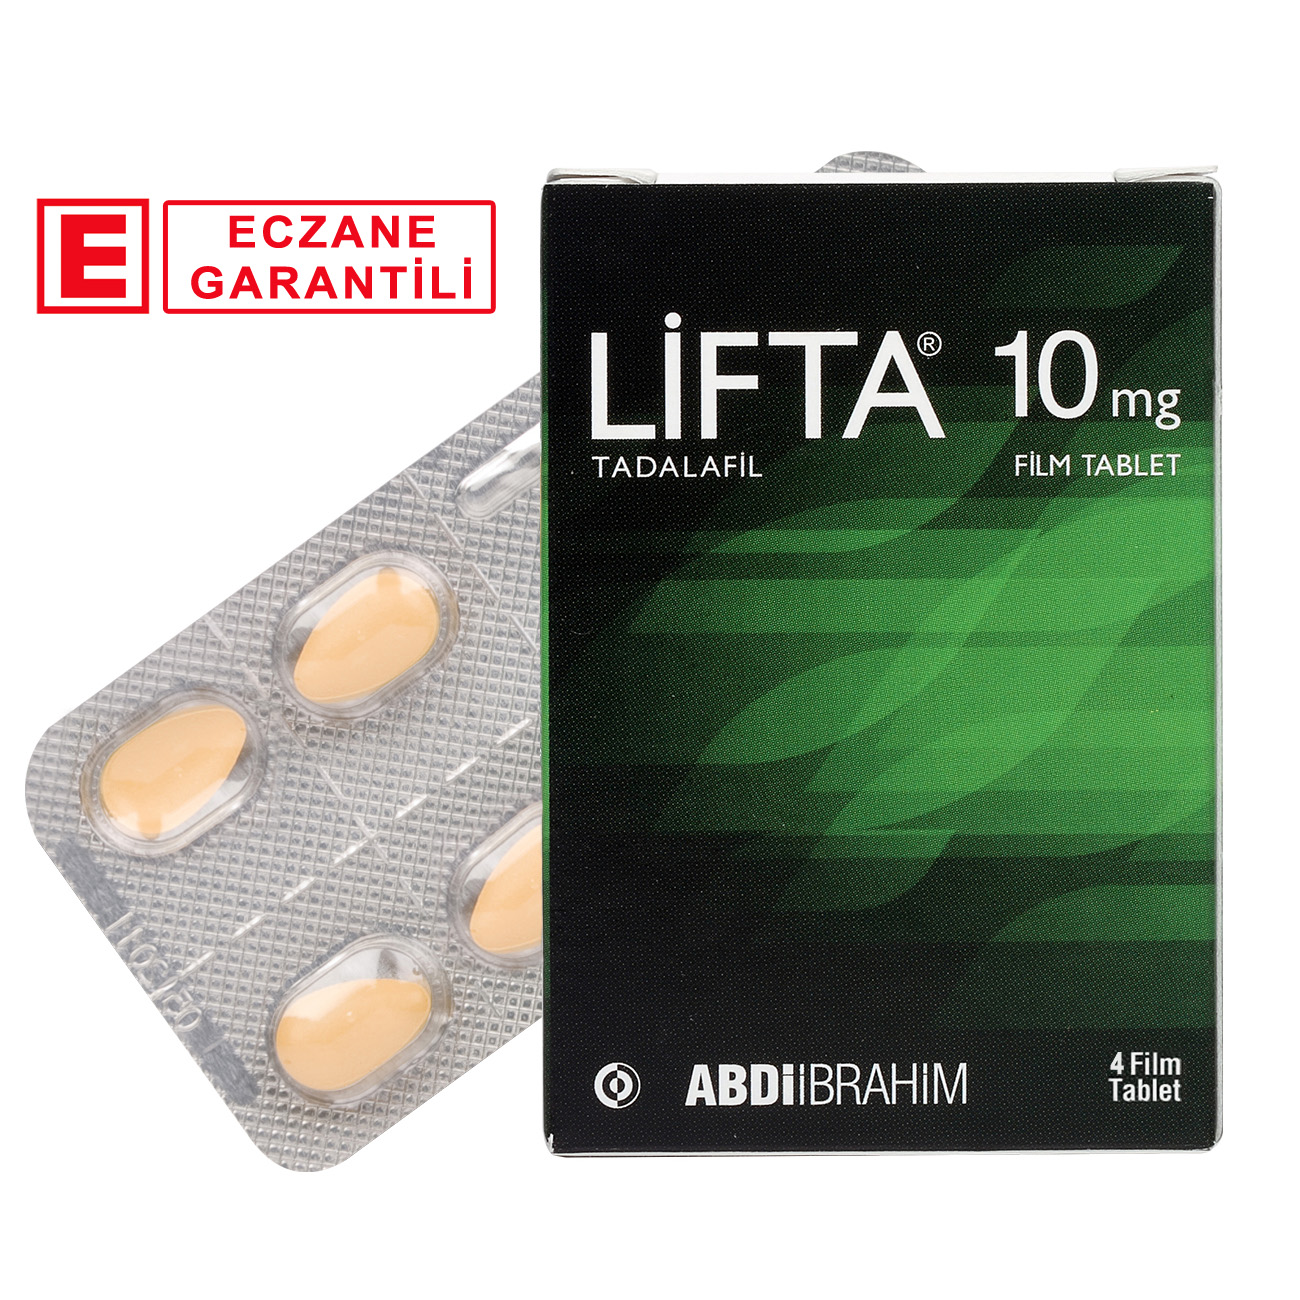 Lifta 10 mg 4 Tablet Fiyat ve Kampanyalı Satışı